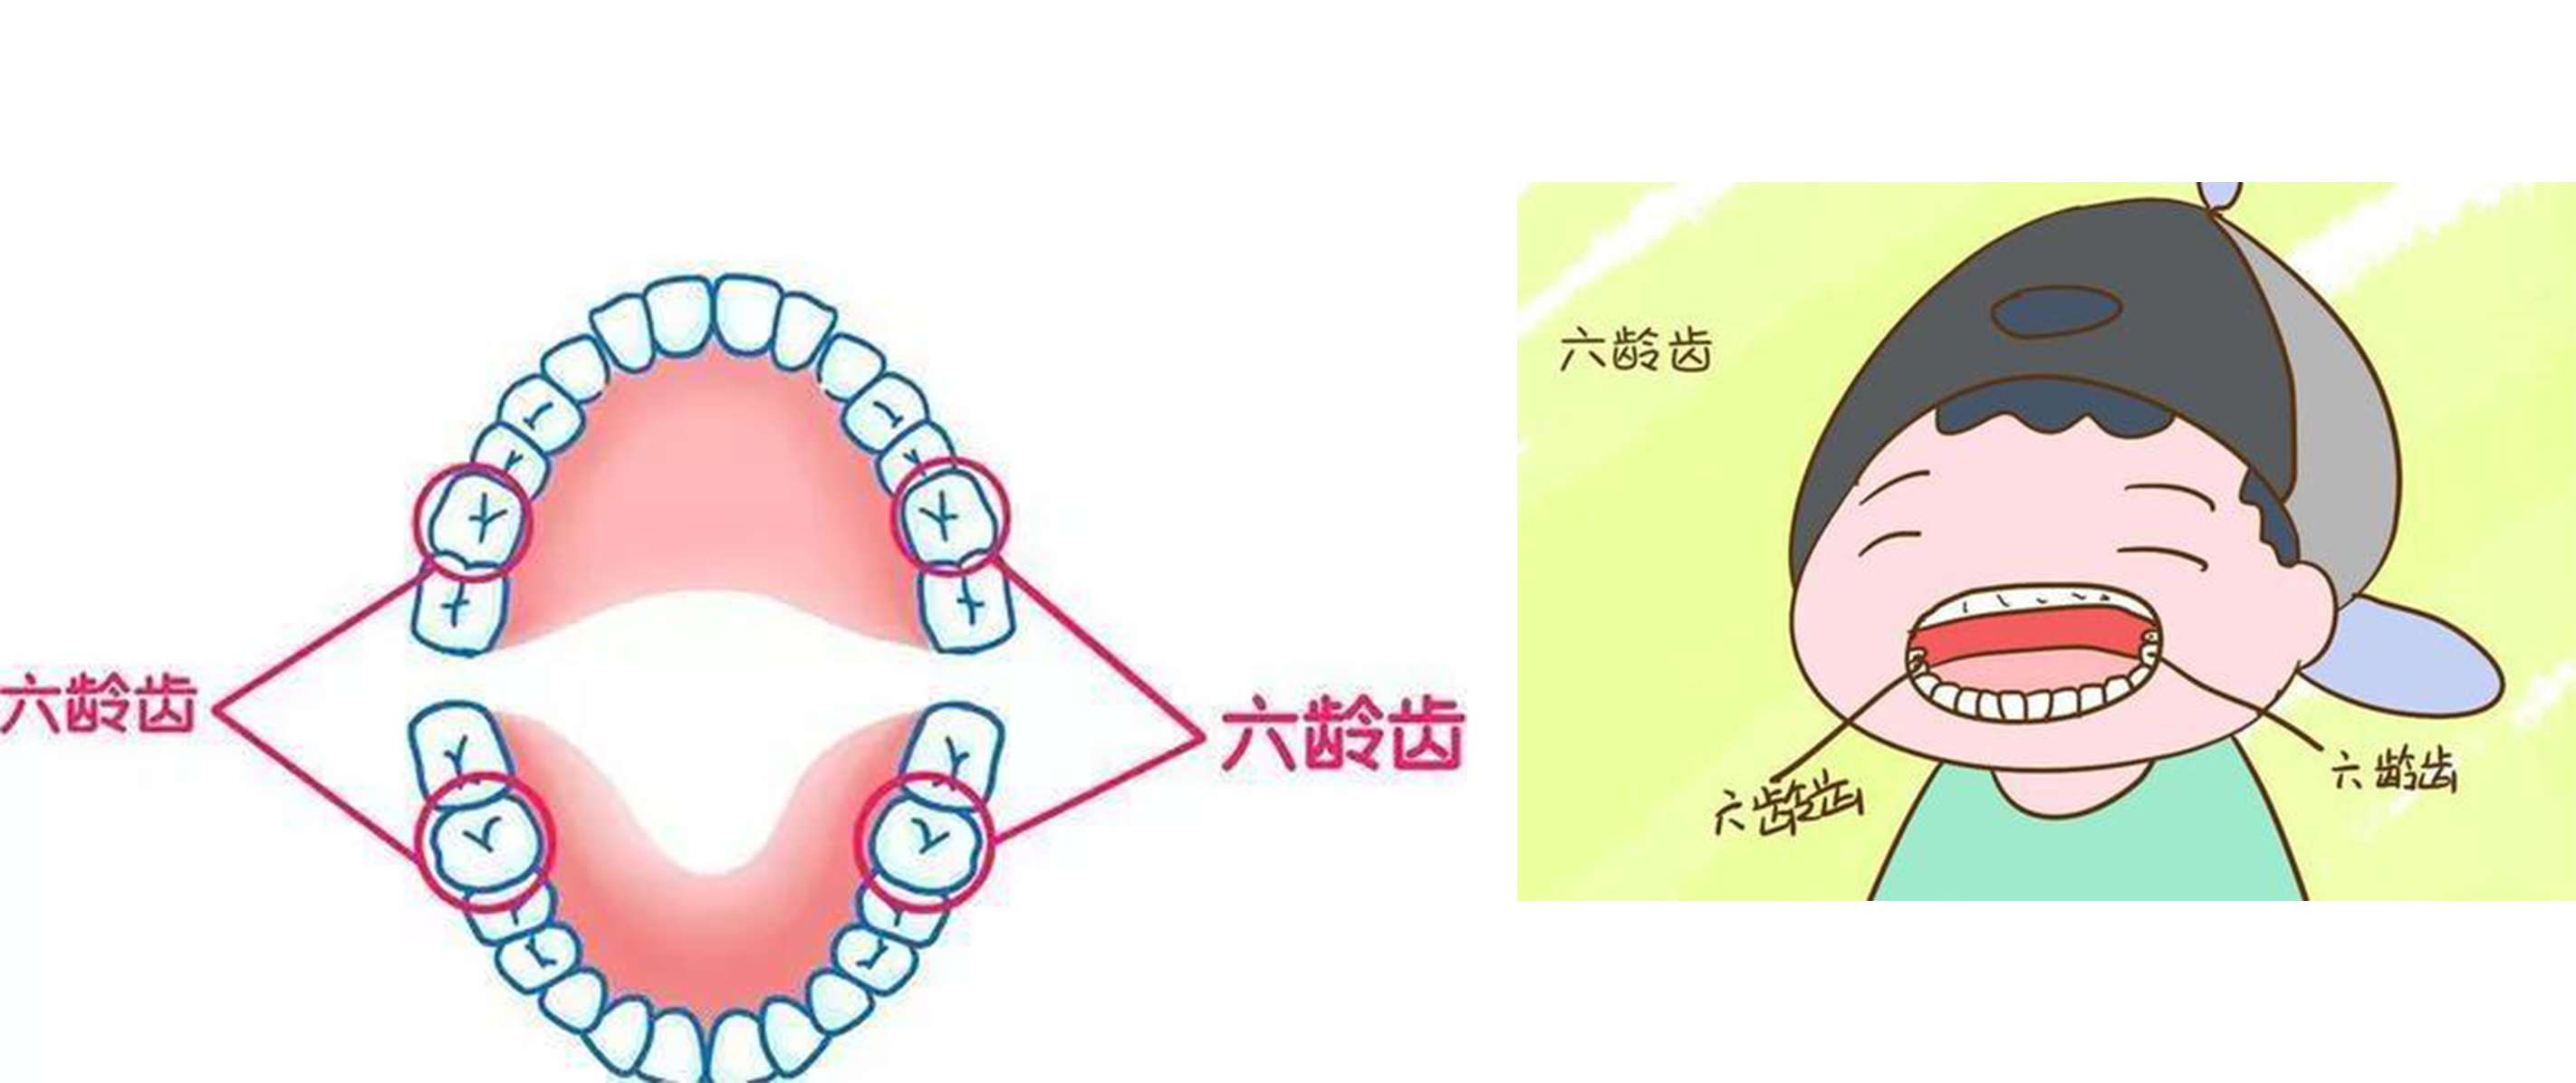 六龄牙是孩子六岁时长出的上下左右各一颗的大牙,也叫第一恒磨牙.